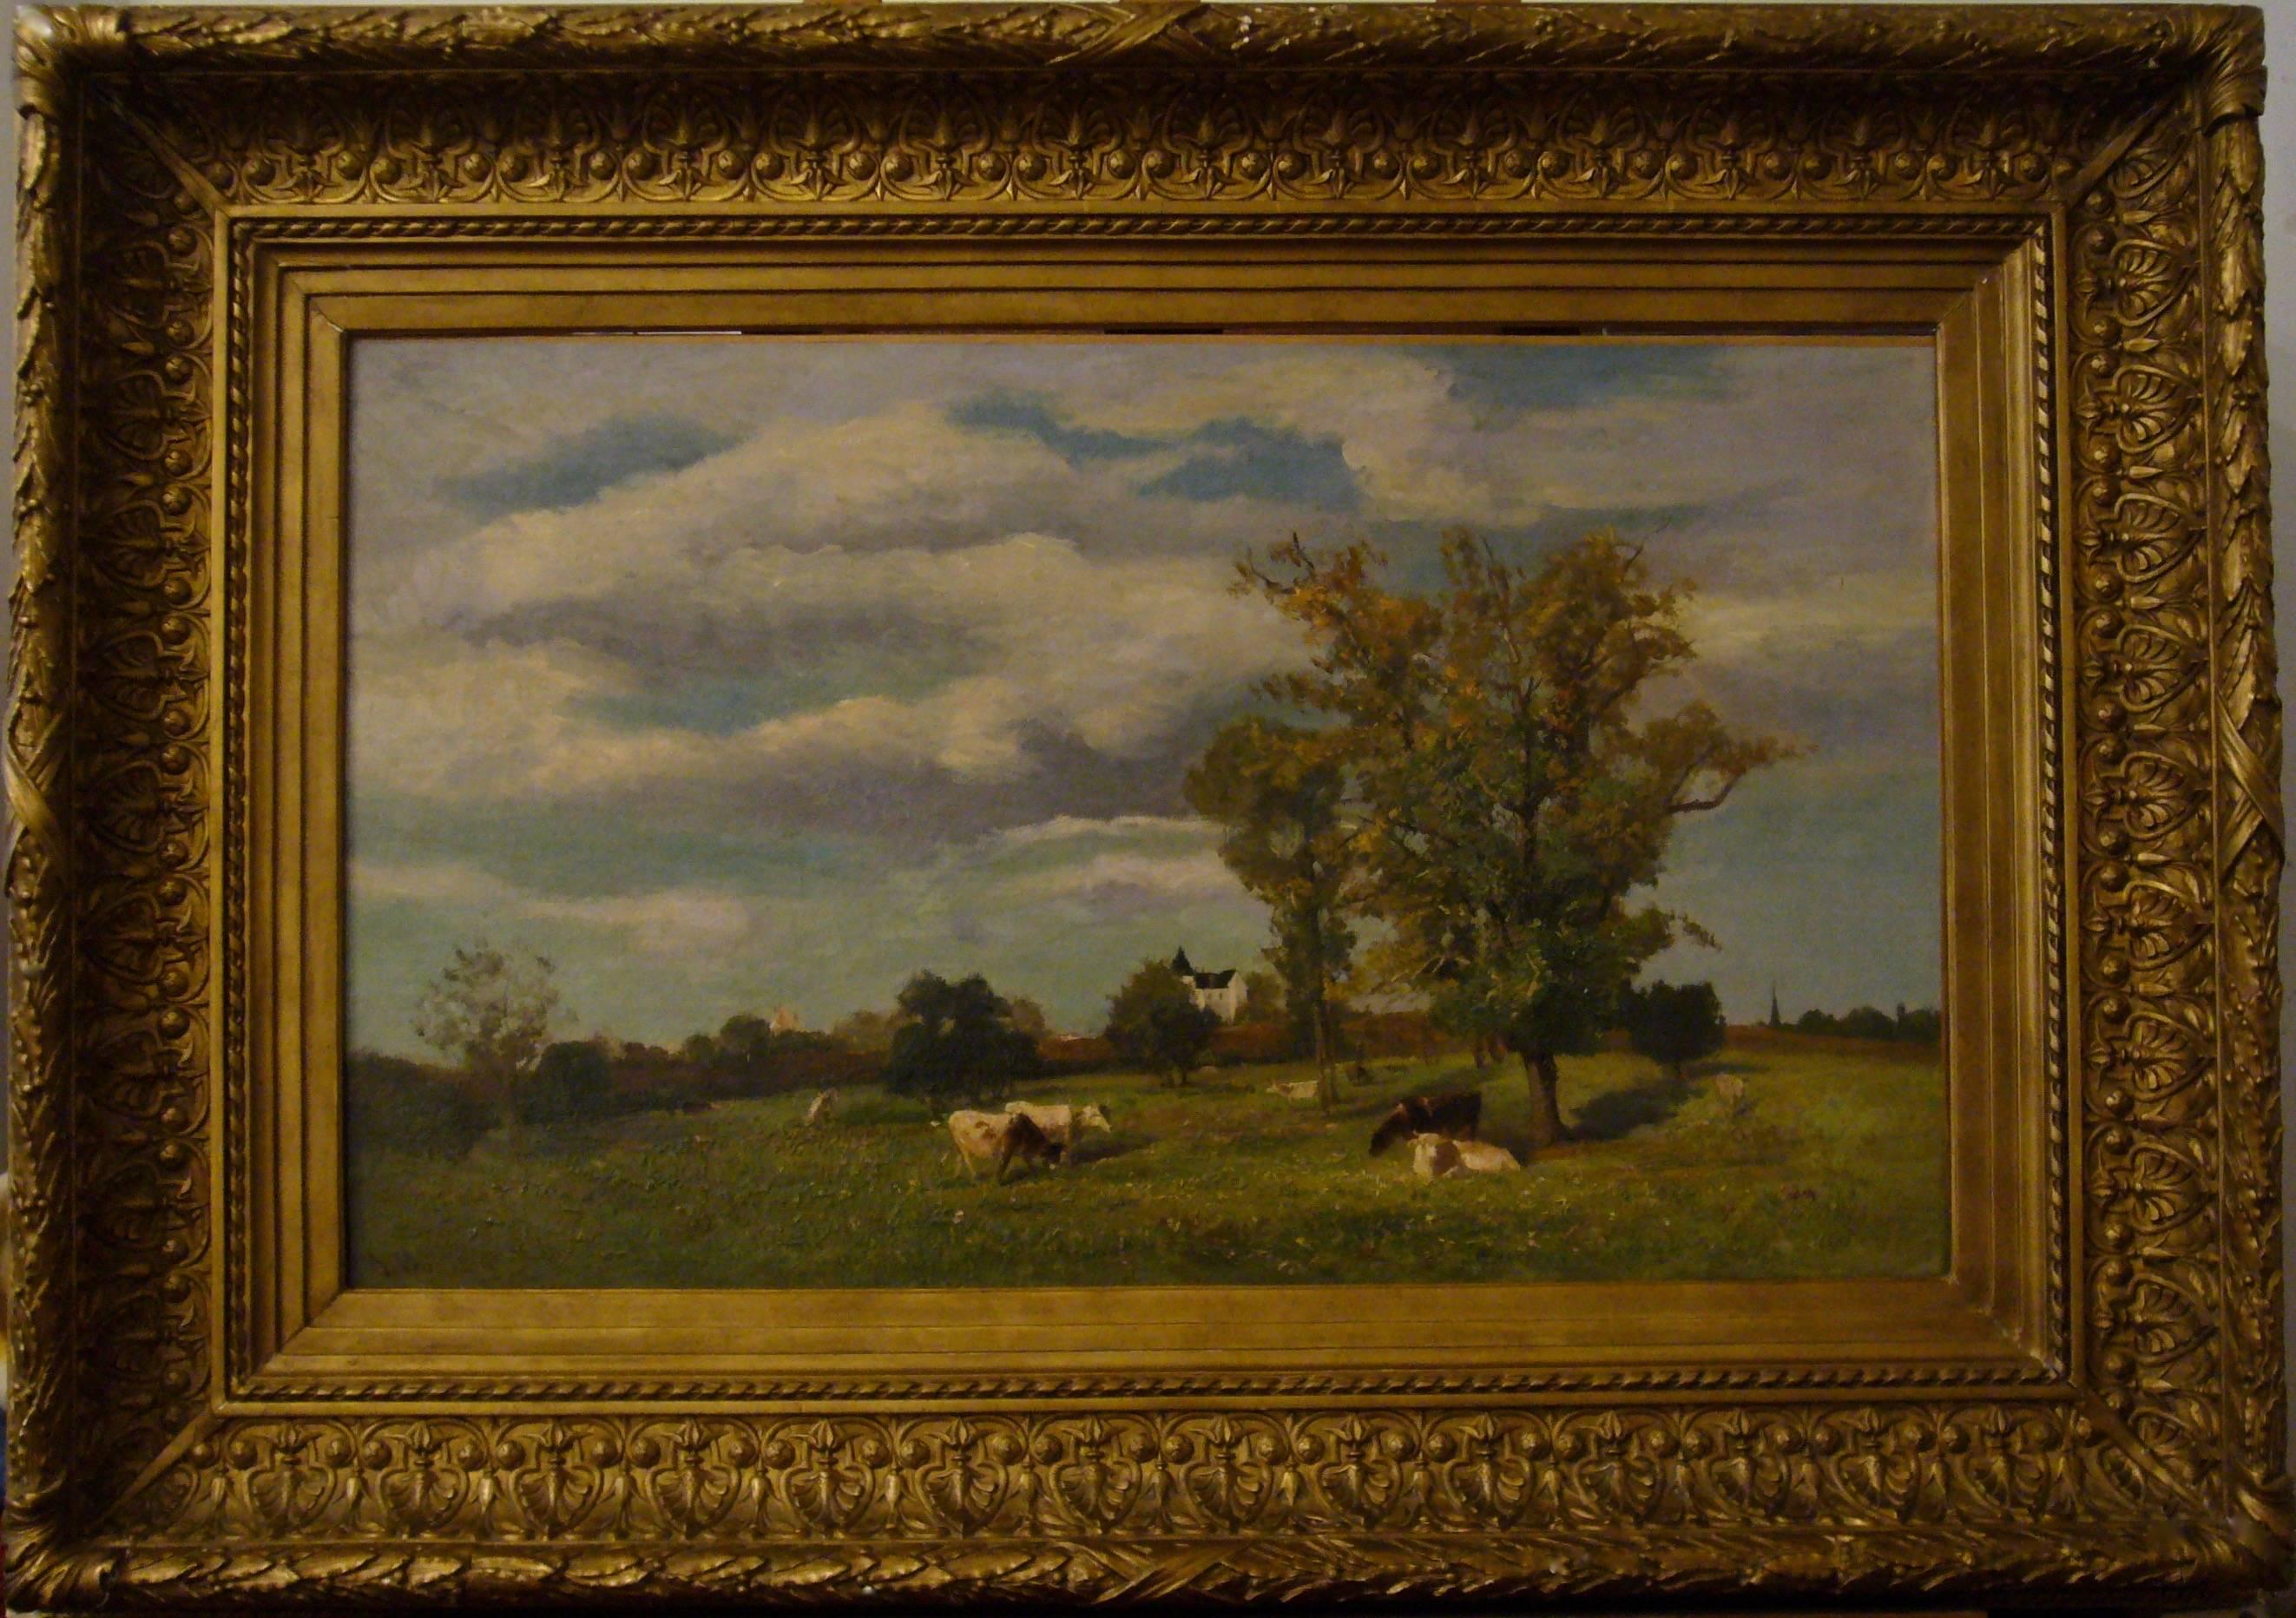 Vaches dans un paysage de printemps près d'un chateau - Painting by Jacques Alfred Brielman